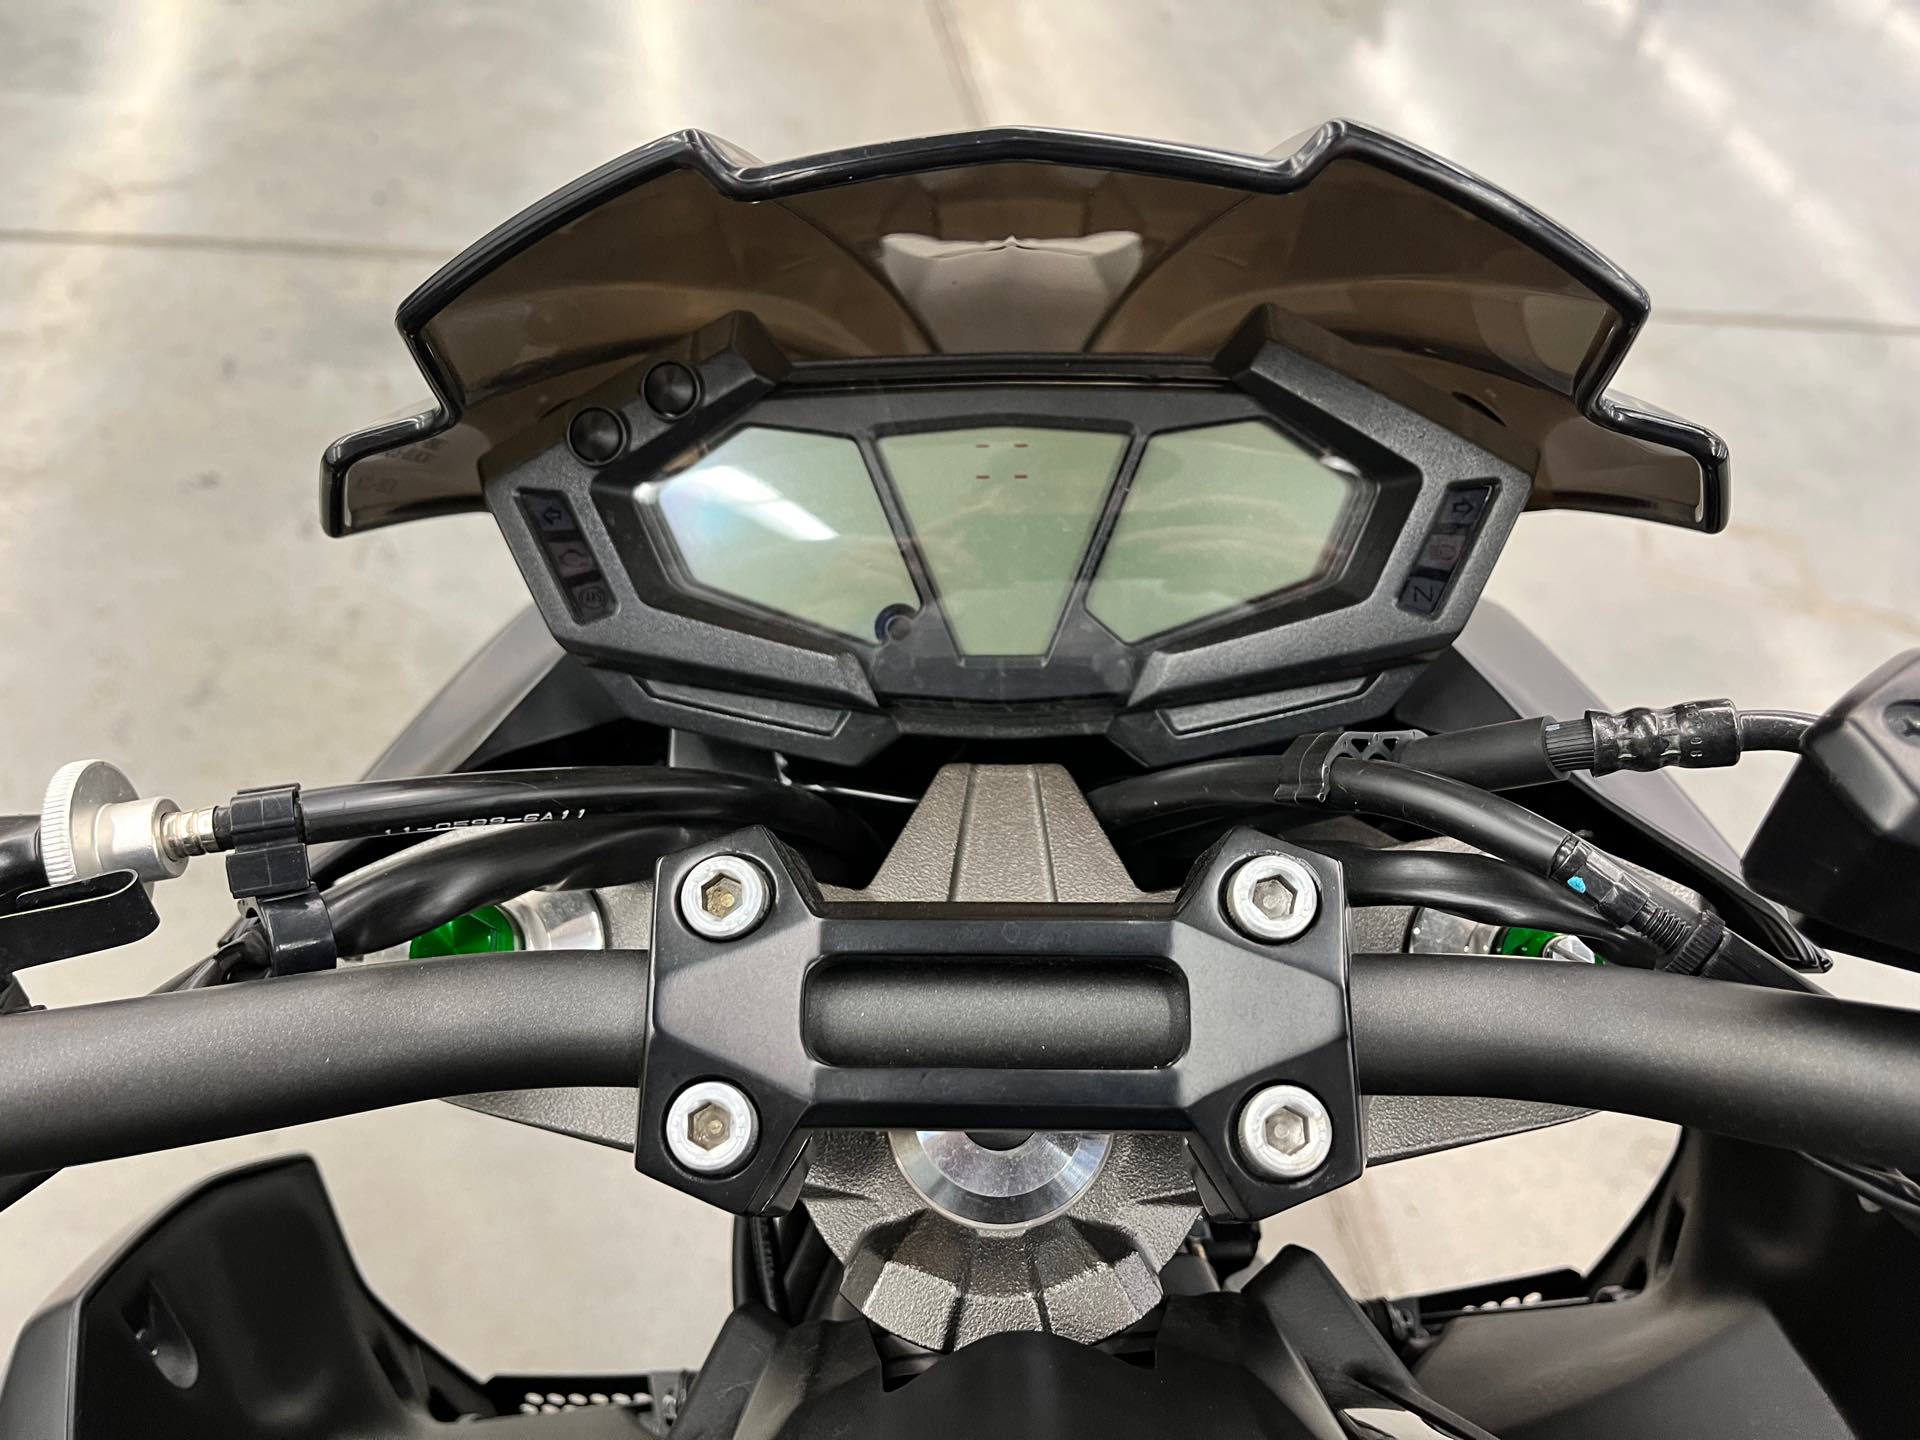 2016 Kawasaki Z 800 ABS at Aces Motorcycles - Denver